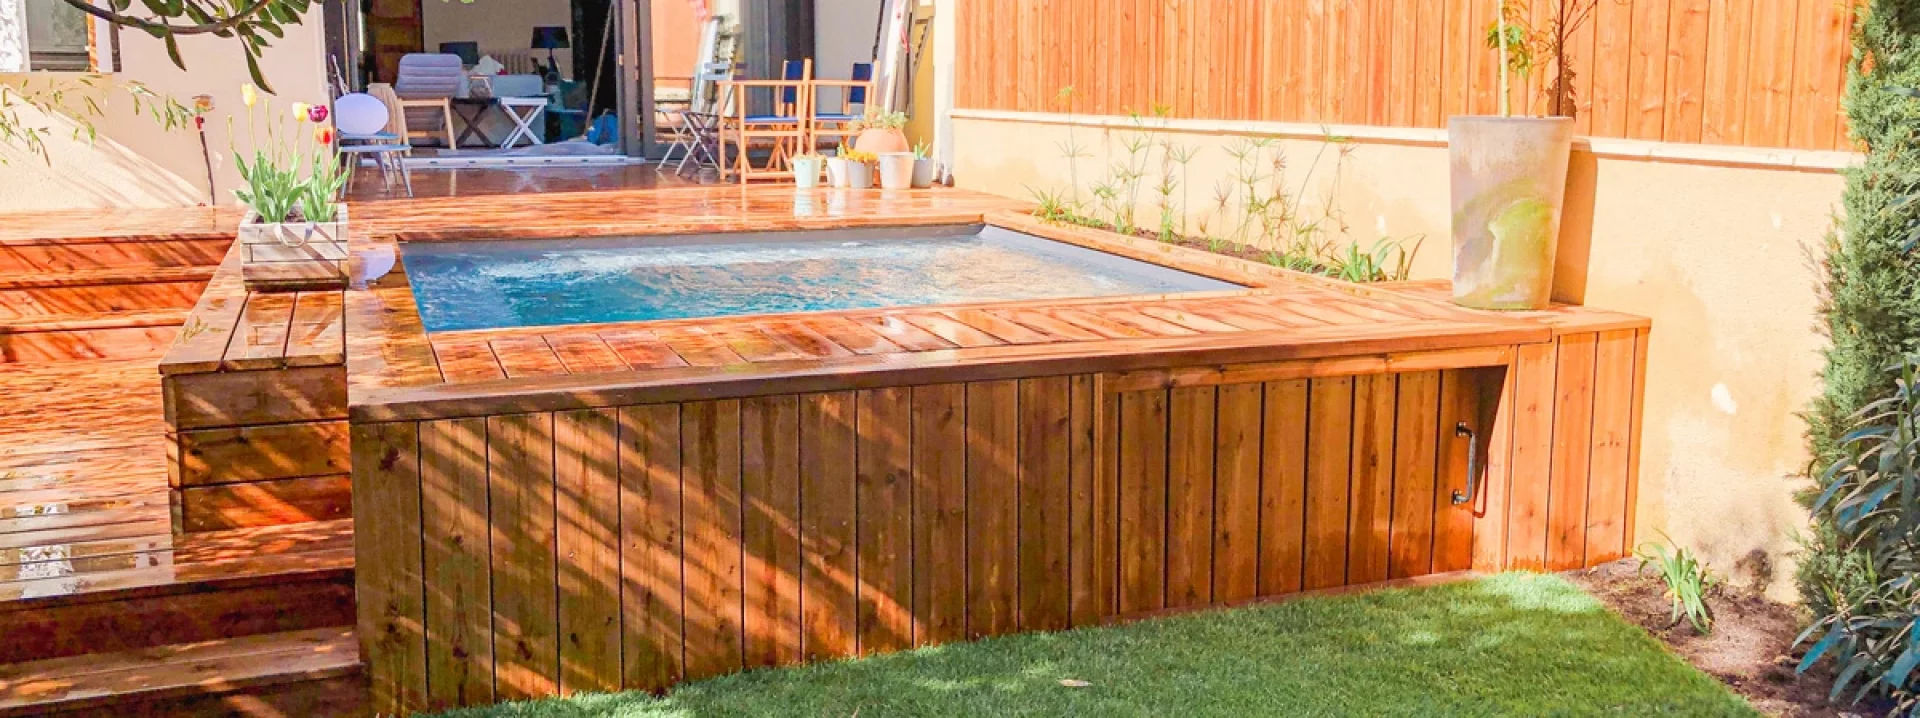 Terrasse de piscine : quelle essence de bois choisir ?